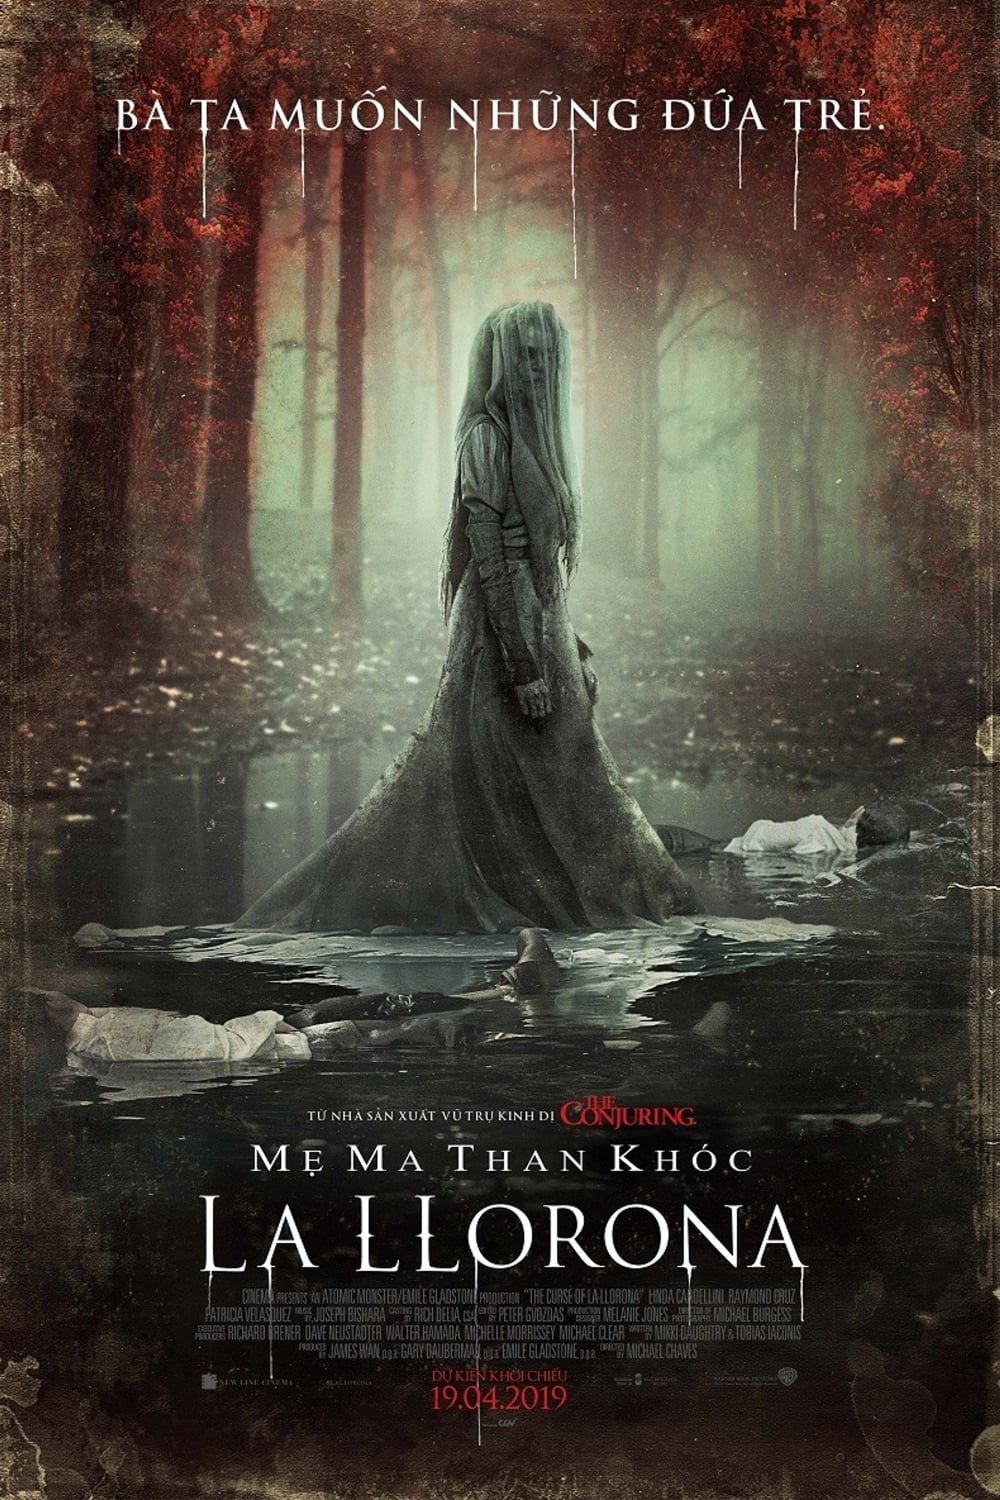 Mẹ Ma Than Khóc La Llorona - The Curse of La Llorona (2019)